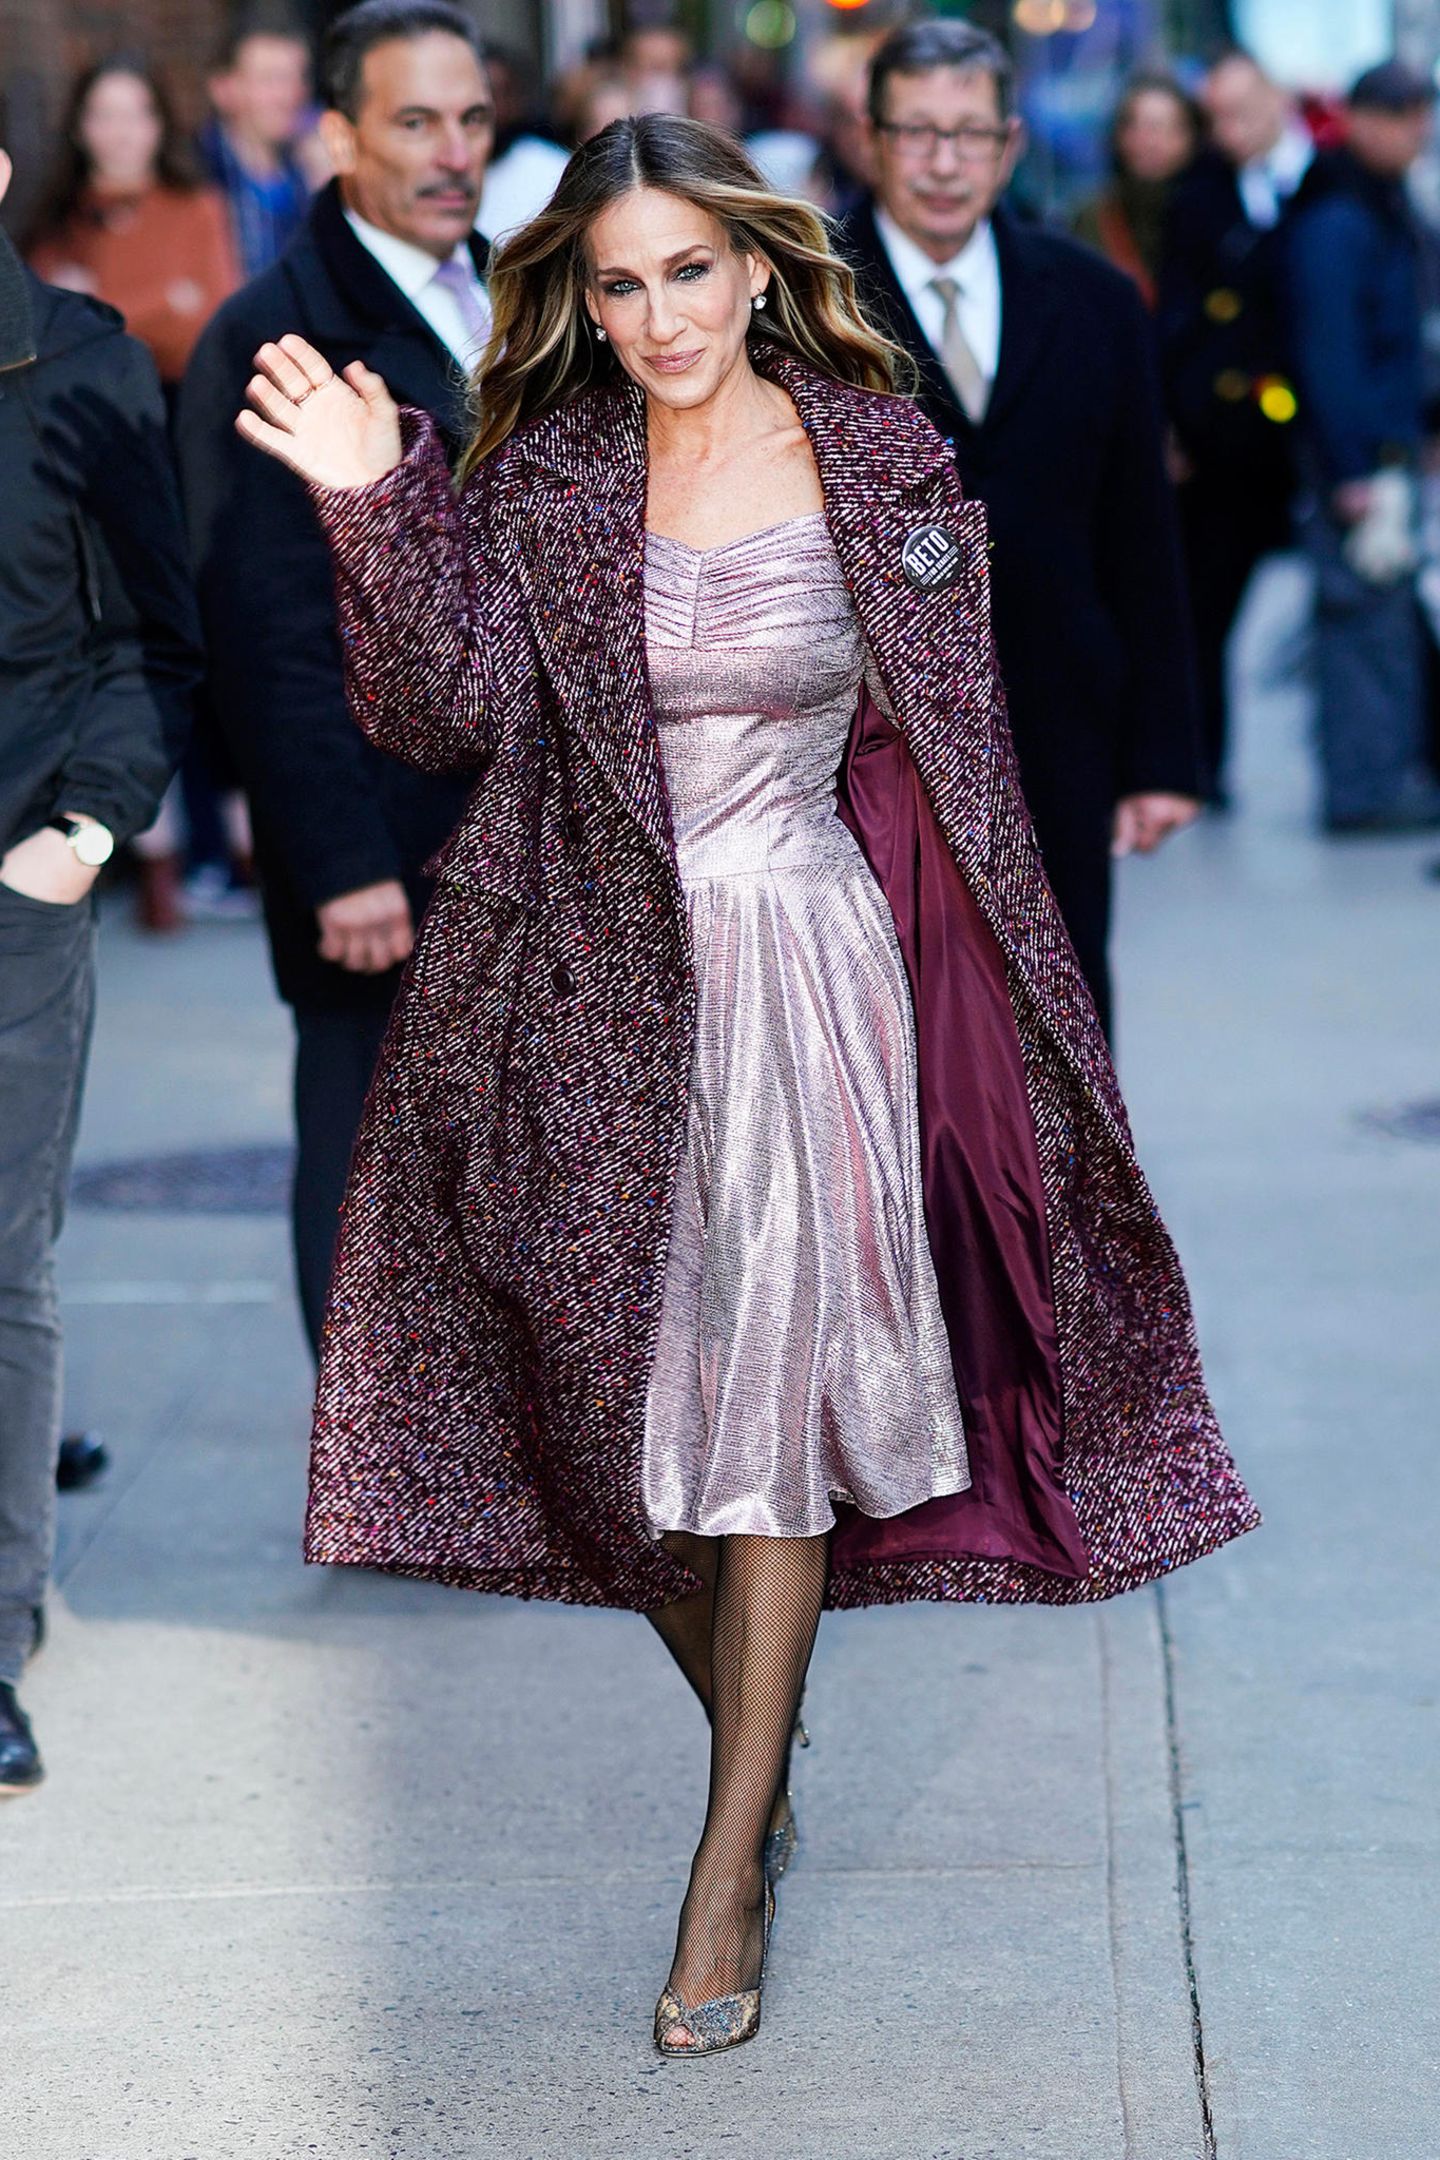 Sarah Jessica Parker versprüht immer noch "Sex and the City"-Charme auf den Straßen New Yorks. Zu einem rosafarbenen Metallic-Kleid kombiniert sie einen herbstlichen Mantel in Bordeauxtönen und glitzernde Peeptoes. Trotz offener Schuhe wählt die Schauspielerin eine Netzstrumpfhose - eigentlich ein Fashion No Go - doch bei Sarah Jessica Parker sieht es super aus. 